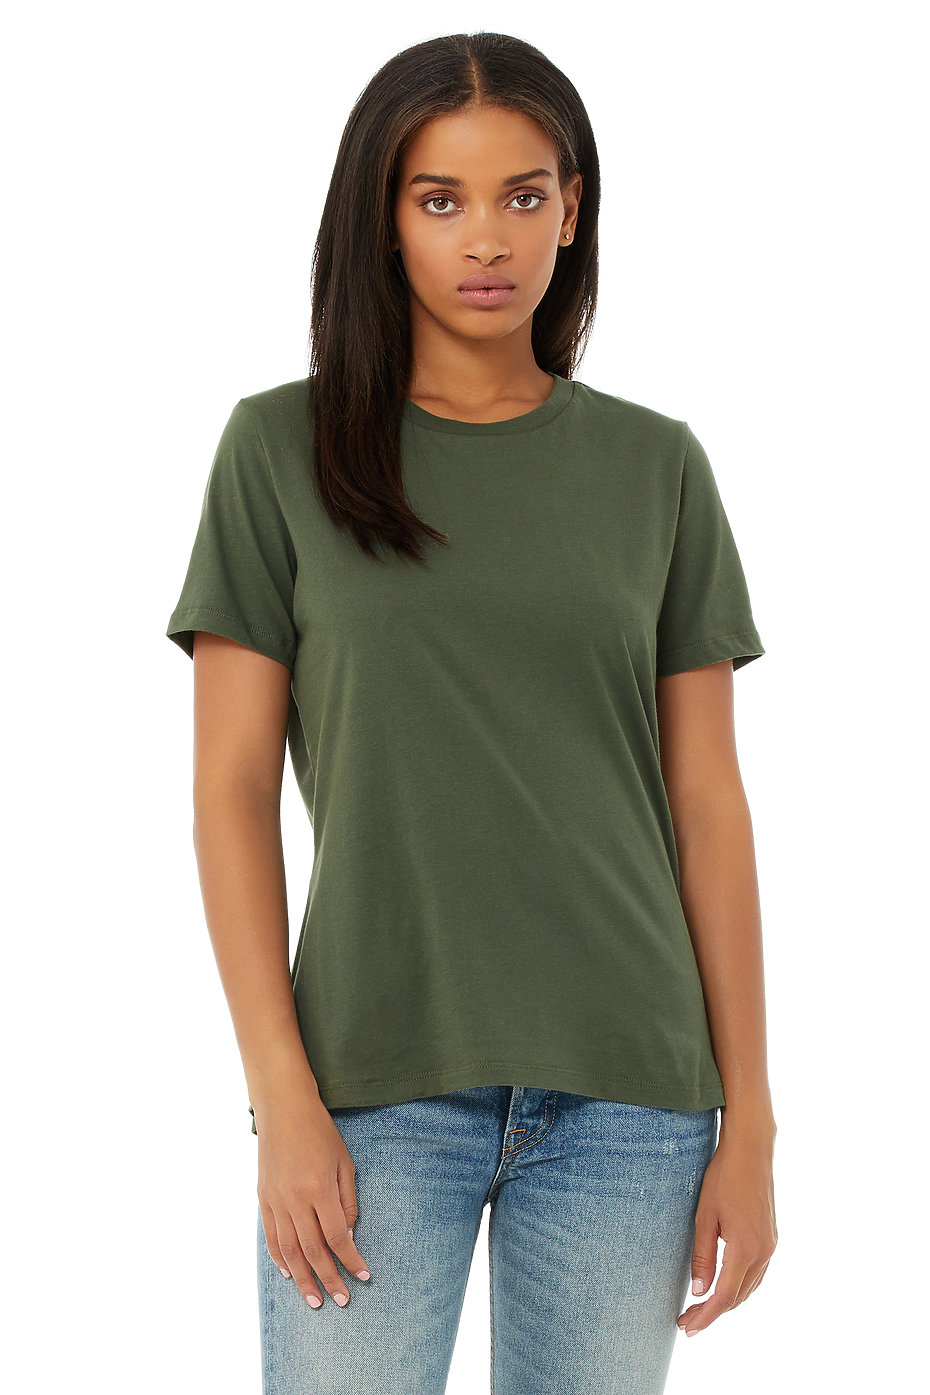 WOMEN FASHION Shirts & T-shirts Knitted Green M VILA crop top discount 62% 